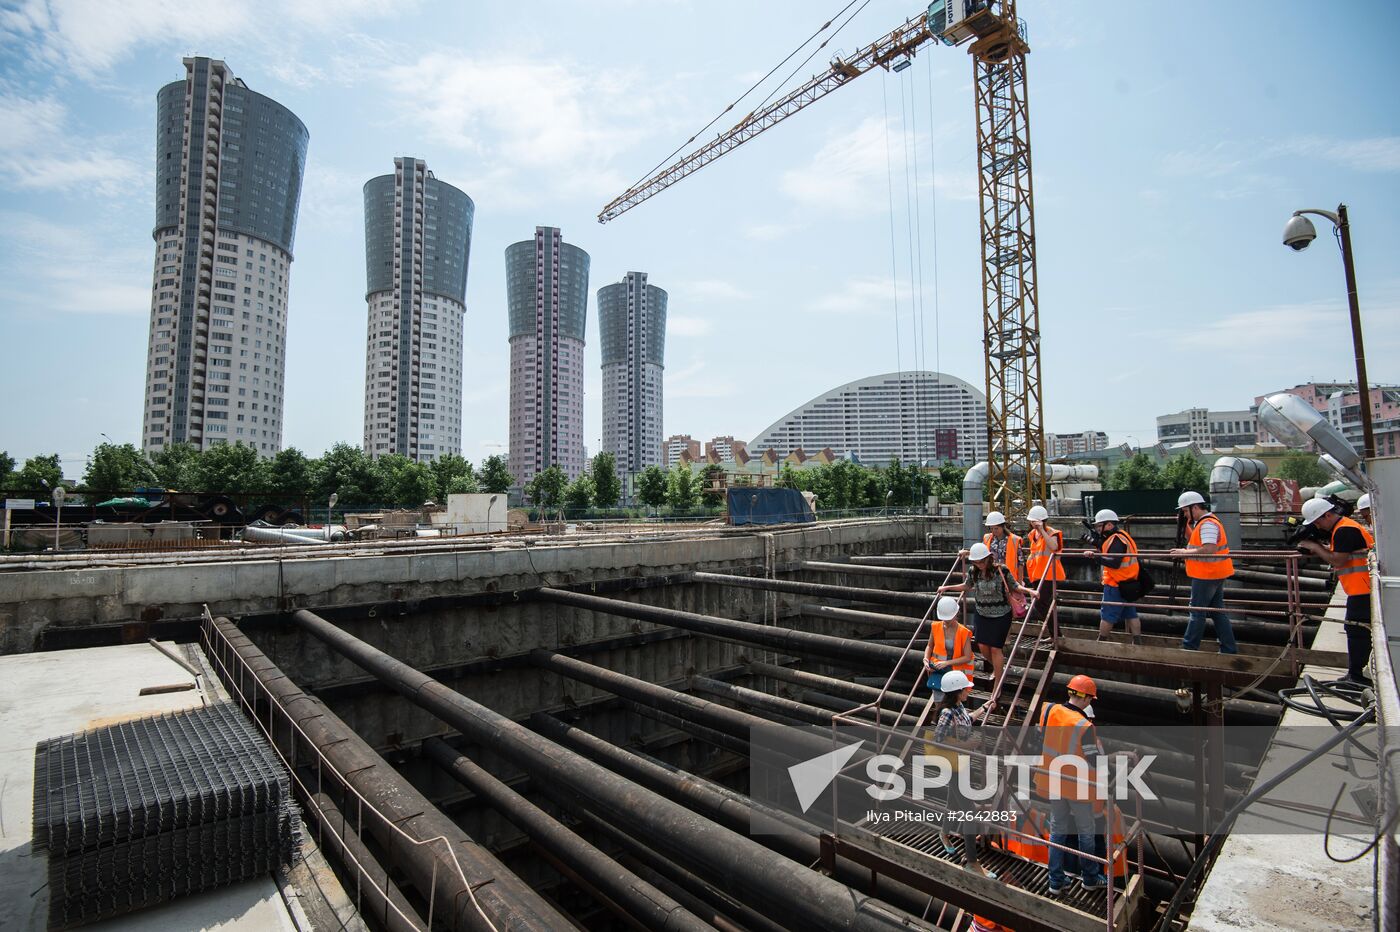 Construction of Khodynskoye Pole metro station